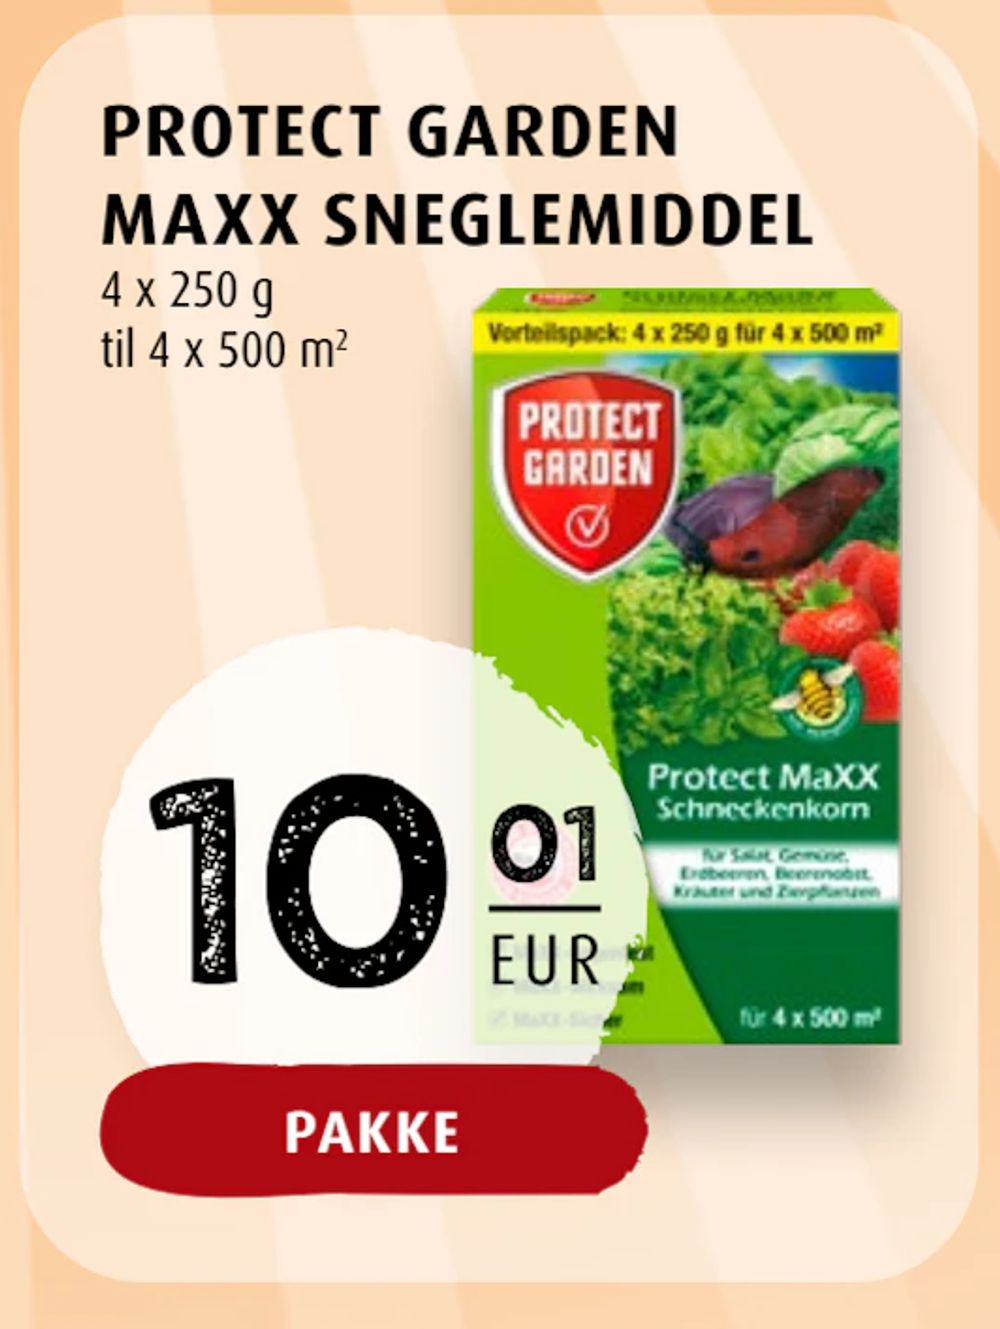 Tilbud på PROTECT GARDEN MAXX SNEGLEMIDDEL fra Scandinavian Park til 10,01 €